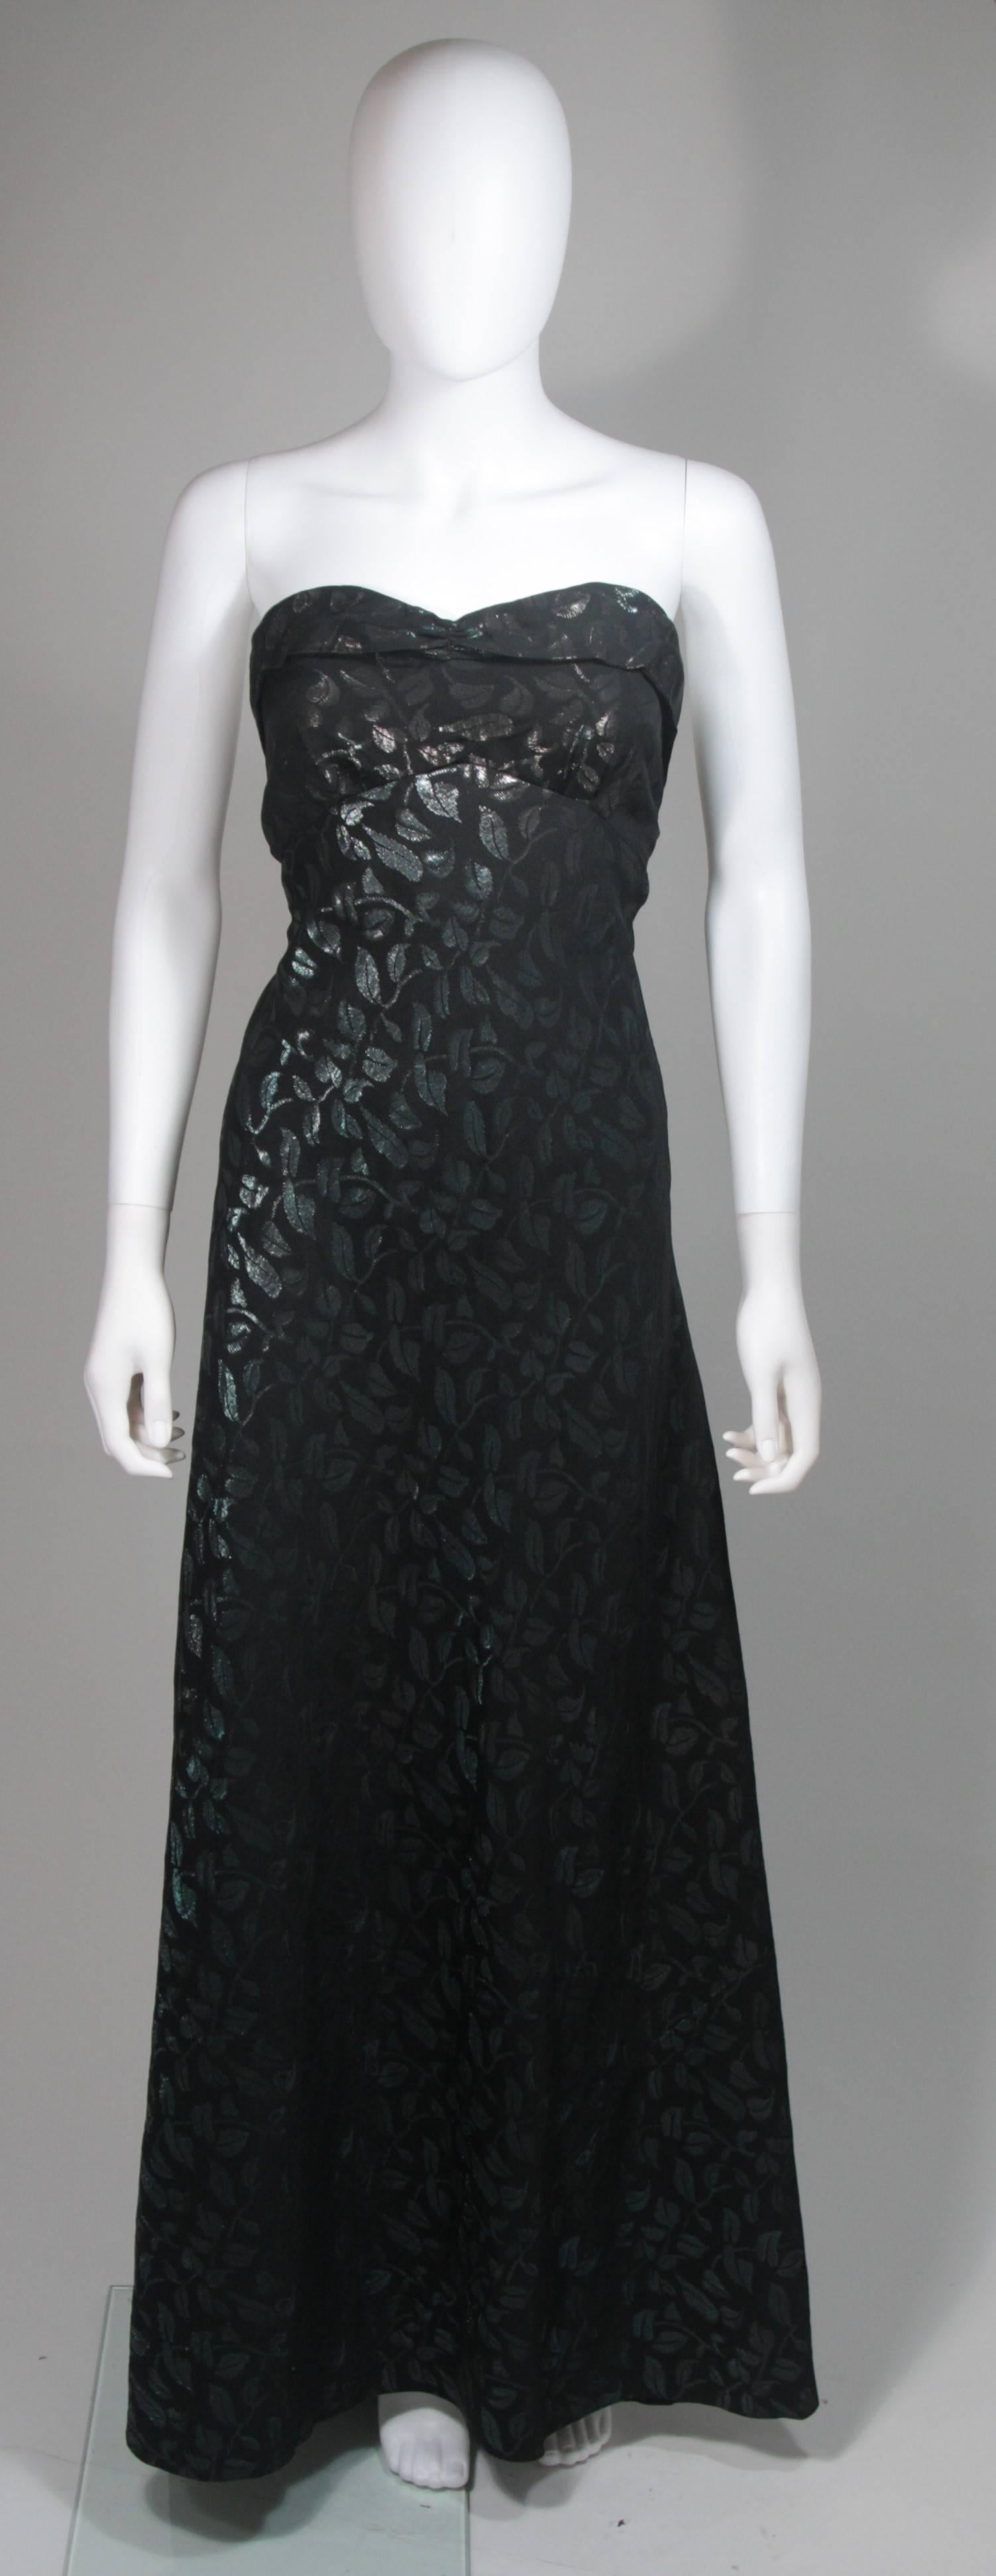 Cette robe vintage est composée d'une soie noire ornée d'un motif de feuilles dans des teintes métalliques bleues et vertes. La robe présente un corsage ajusté et une jupe évasée. Les boutons sont situés au centre du dos. Vintage, en excellent état.